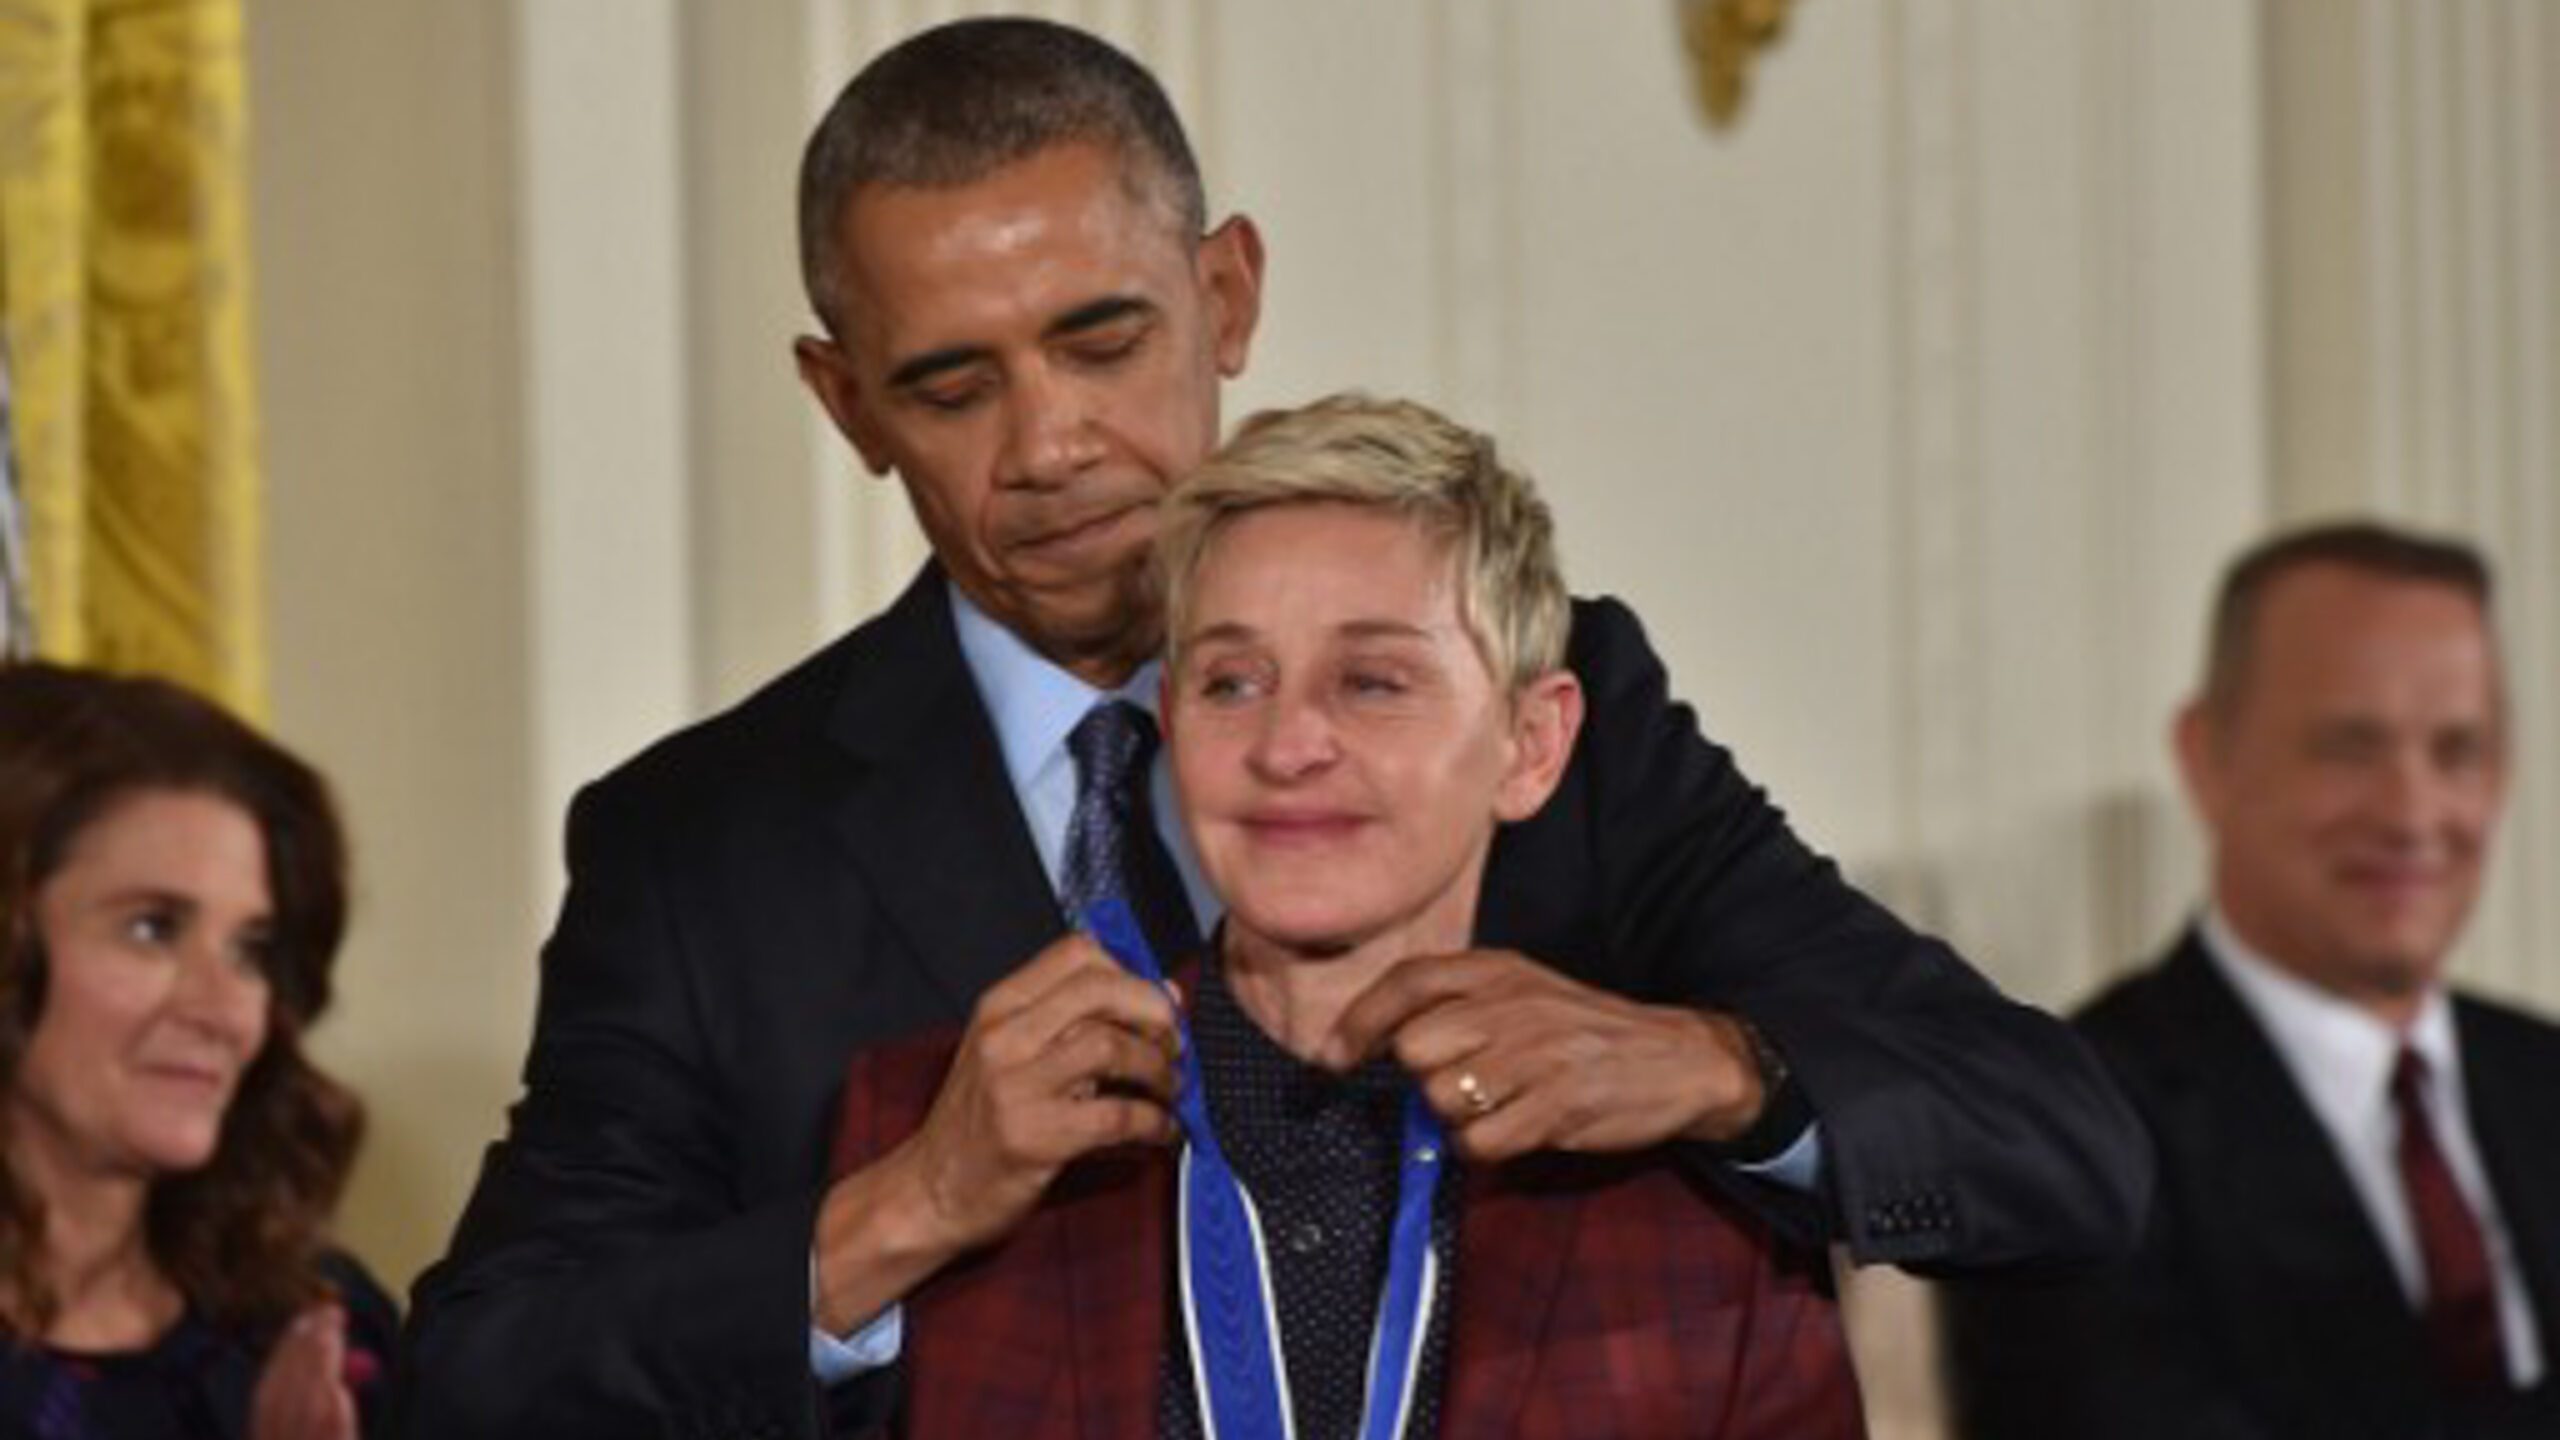 LOOK: Emotional Ellen DeGeneres receives Presidential Medal of Freedom